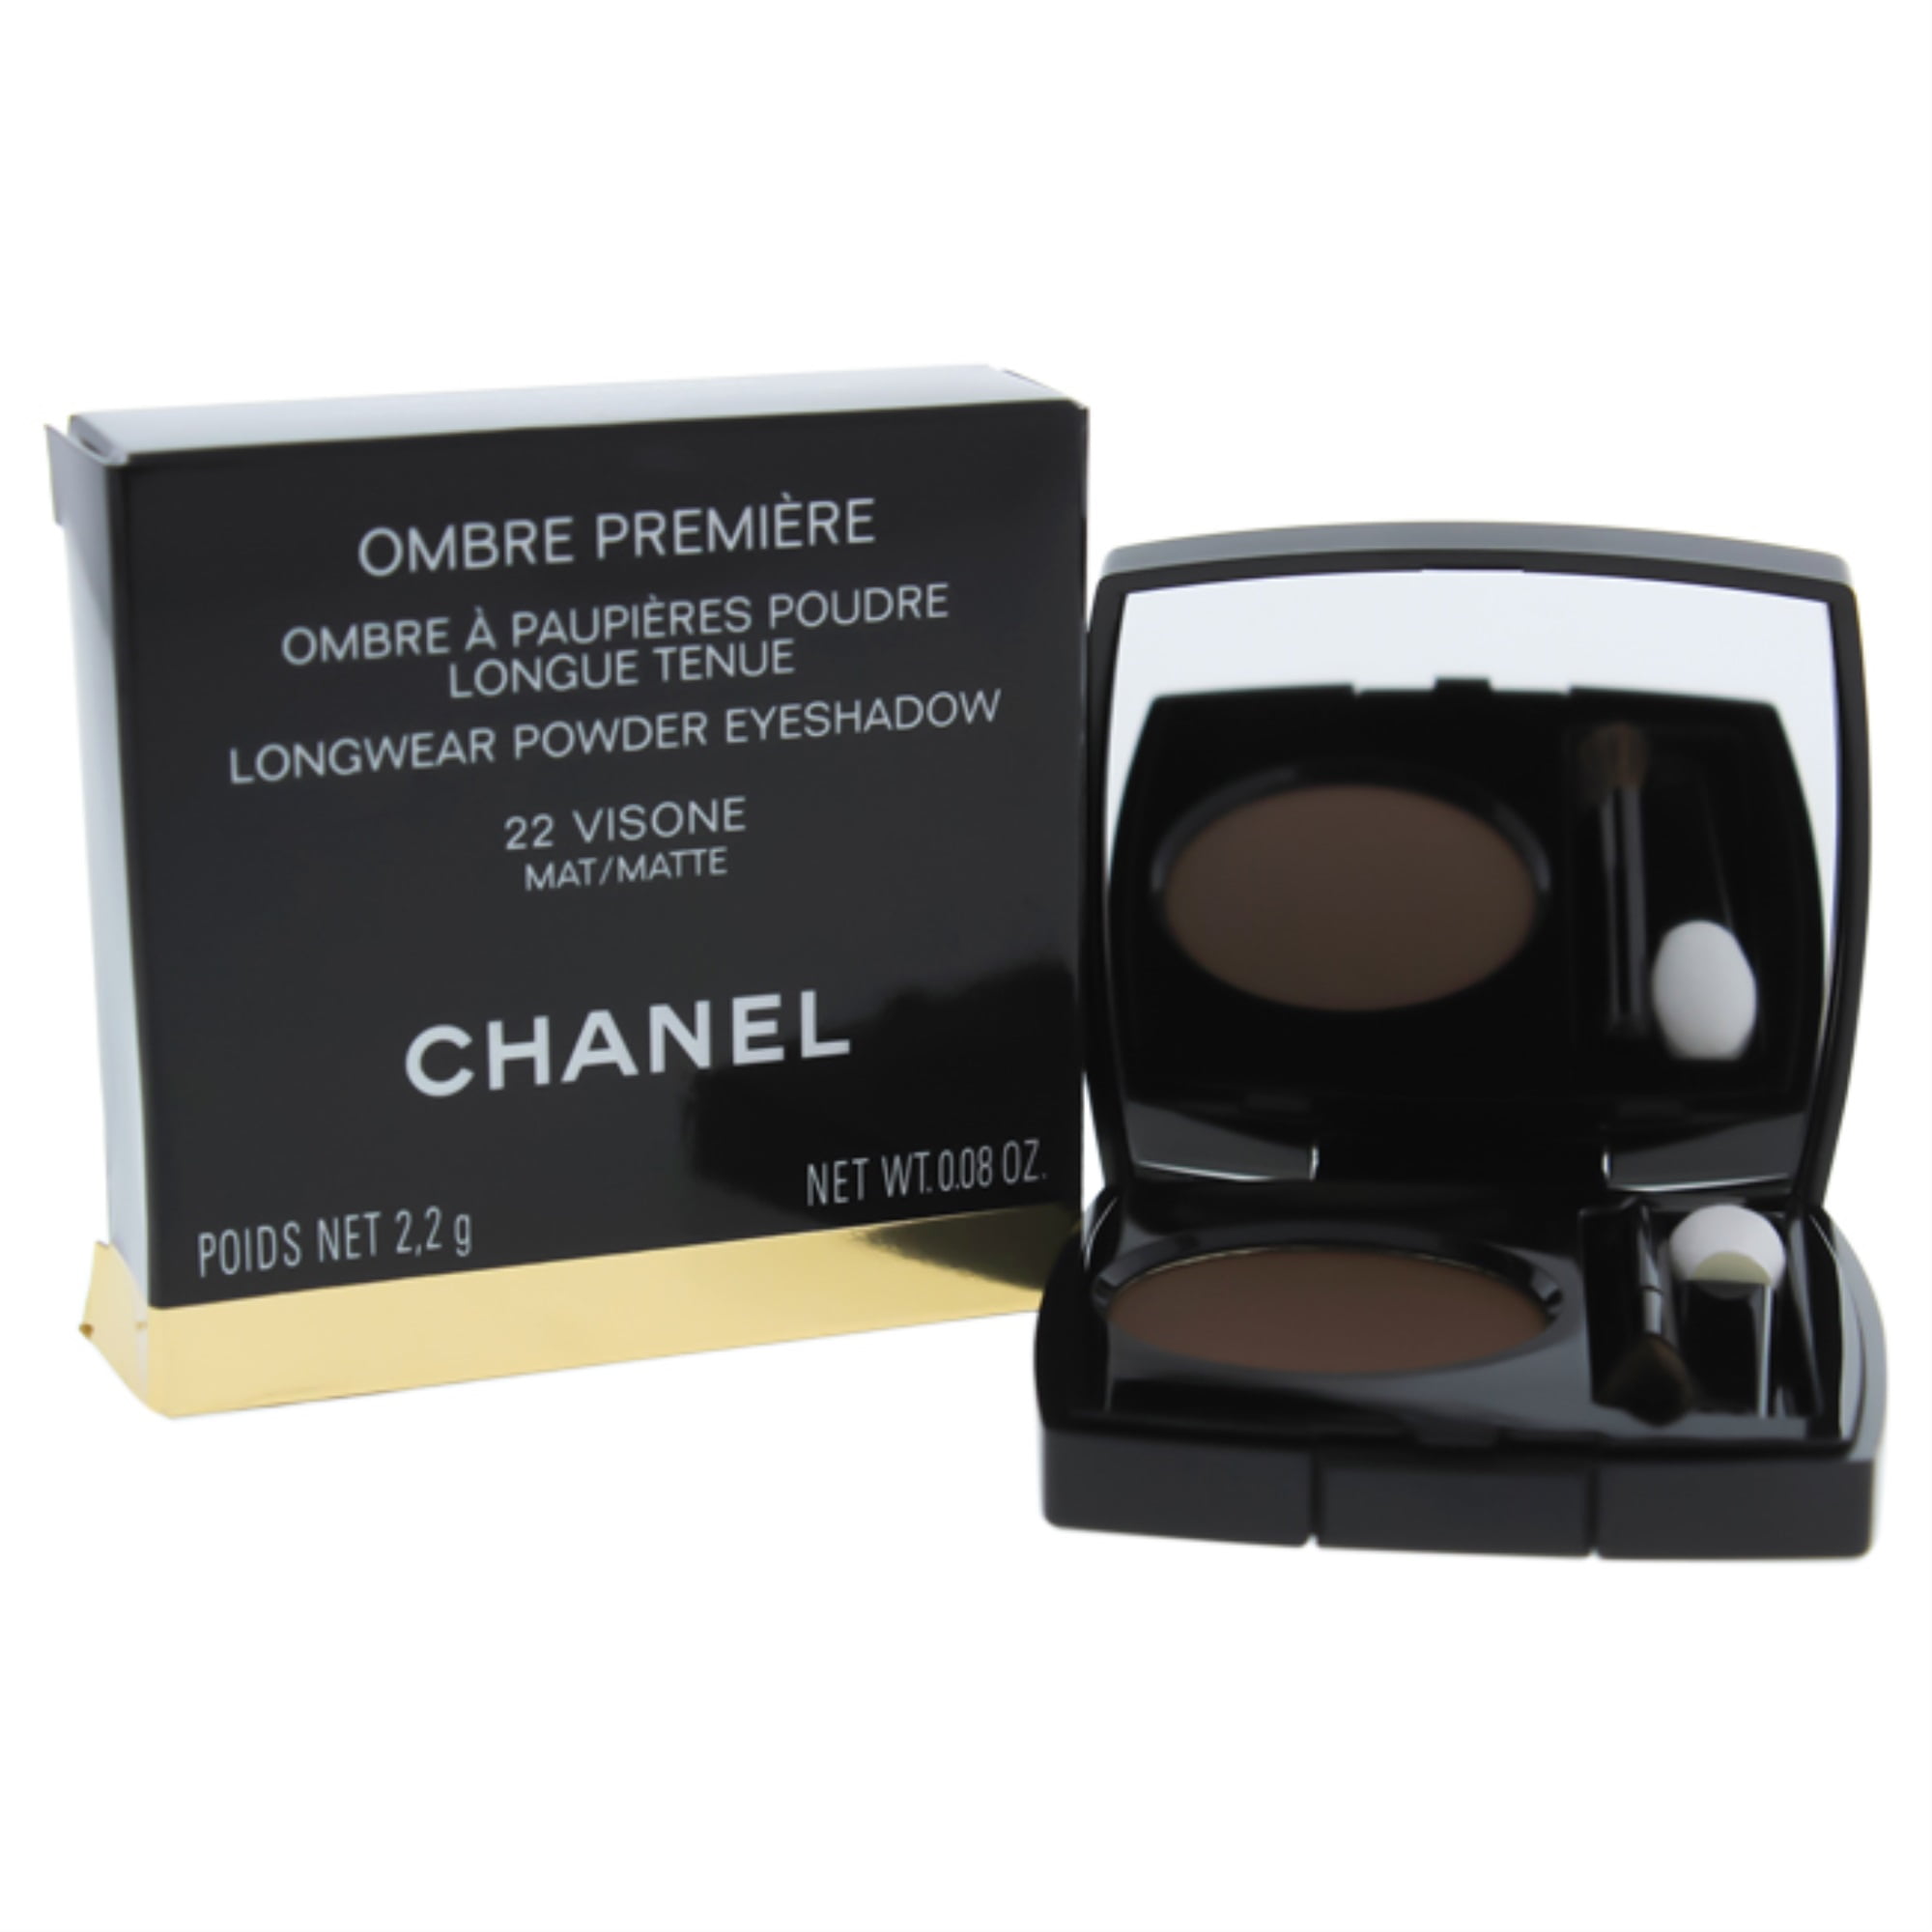 Ombre Premiere Longwear Powder Eyeshadow - 22 Visone by Chanel for